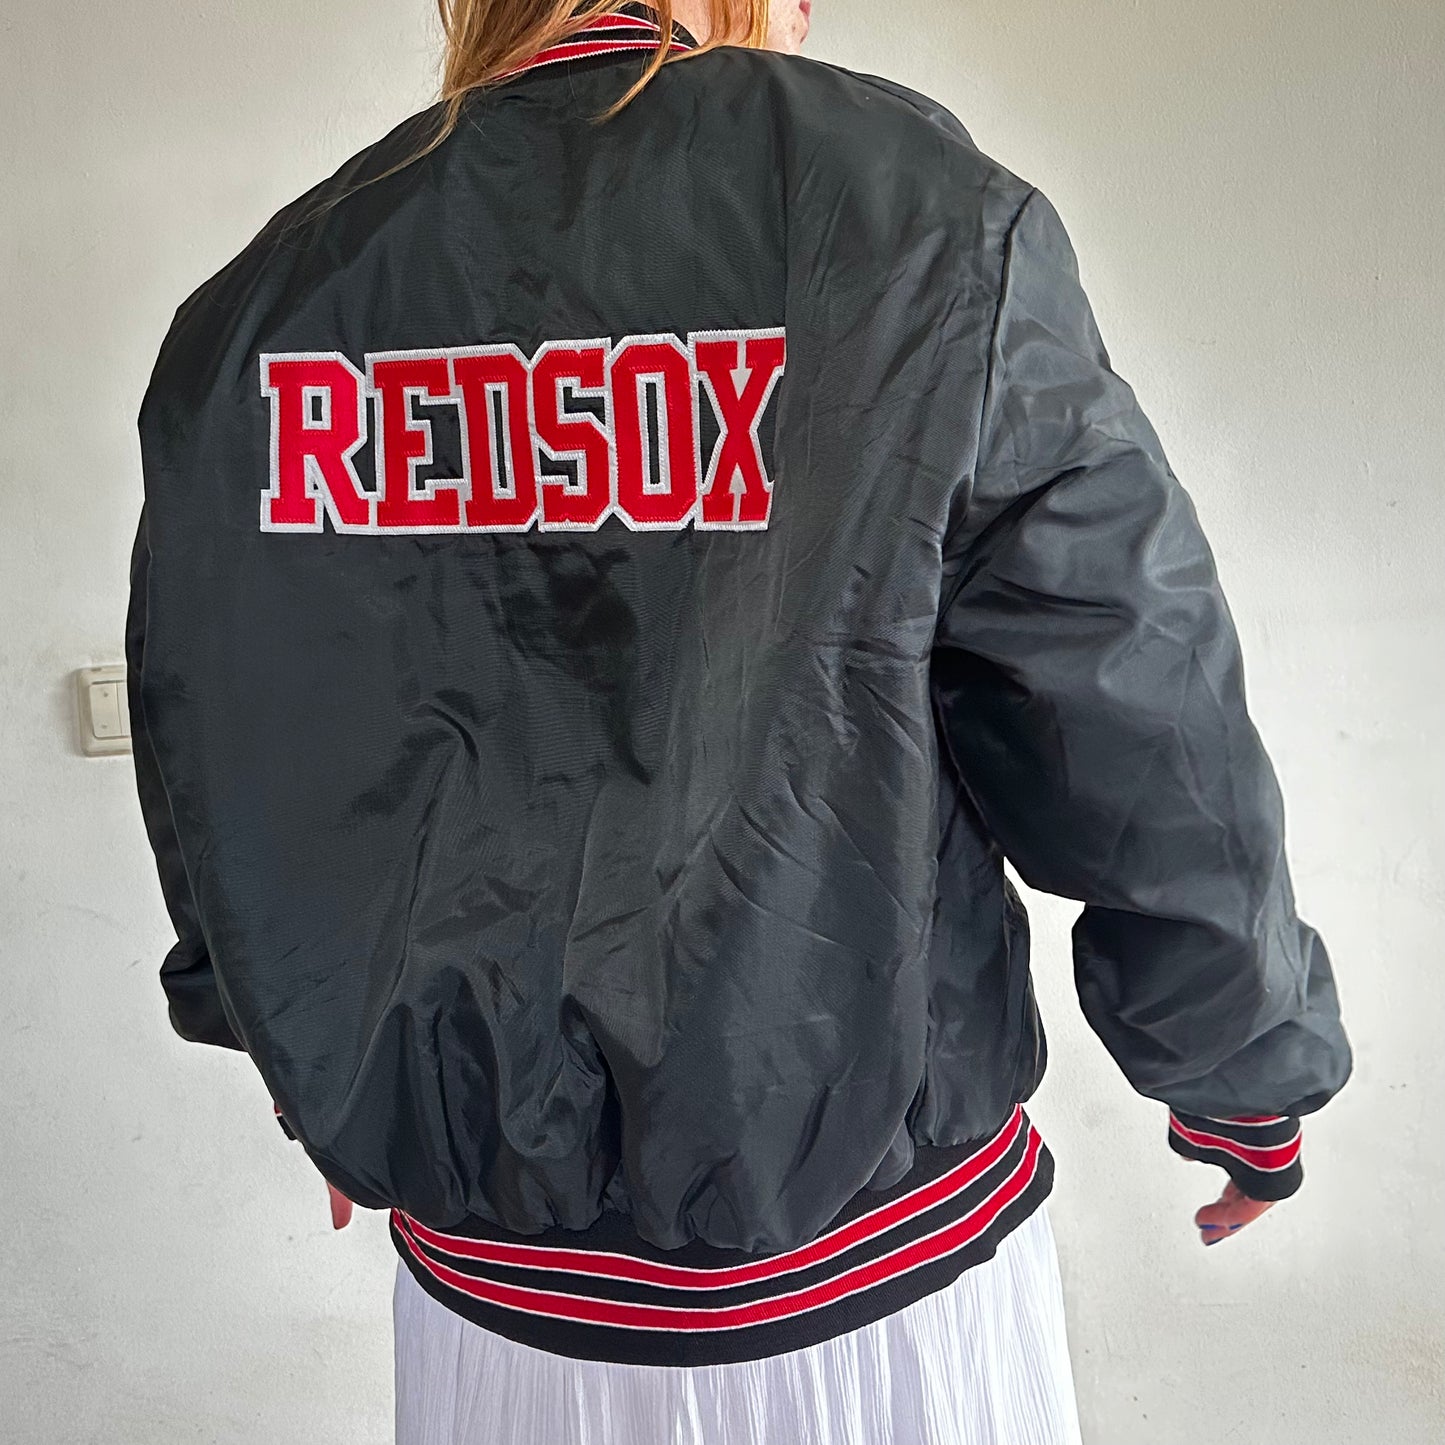 Vintage Redsox Jacket